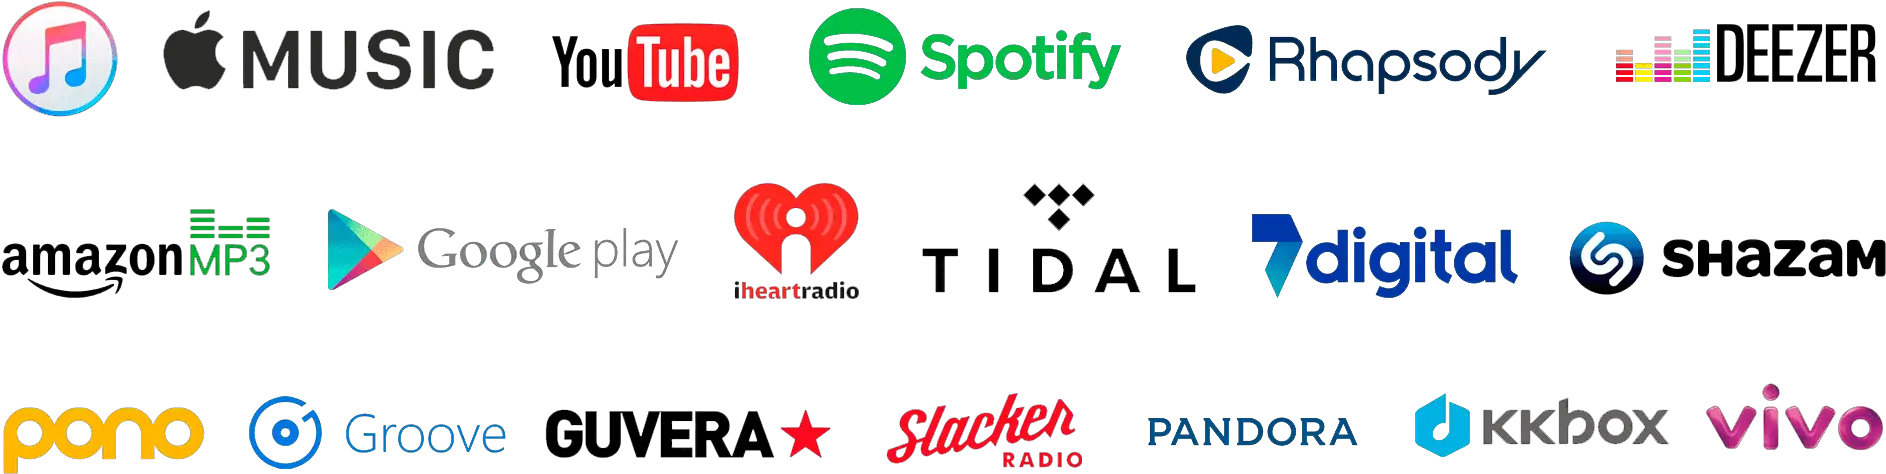 music platform logos, all music platforms logo, music platform logos png, available on all music platforms png, digital platforms png